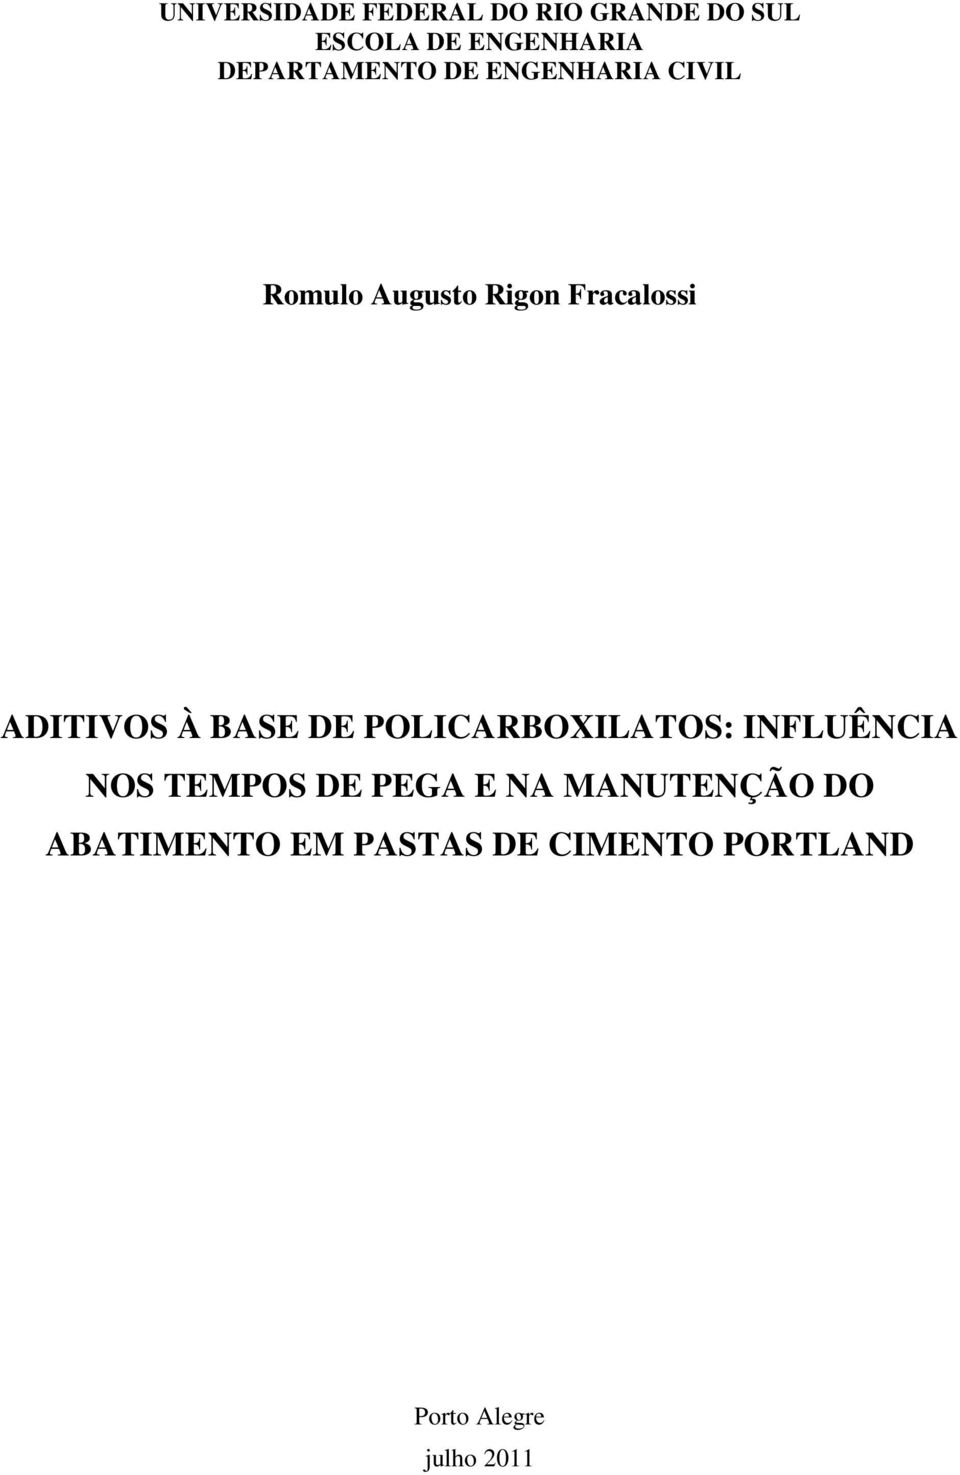 ADITIVOS À BASE DE POLICARBOXILATOS: INFLUÊNCIA NOS TEMPOS DE PEGA E